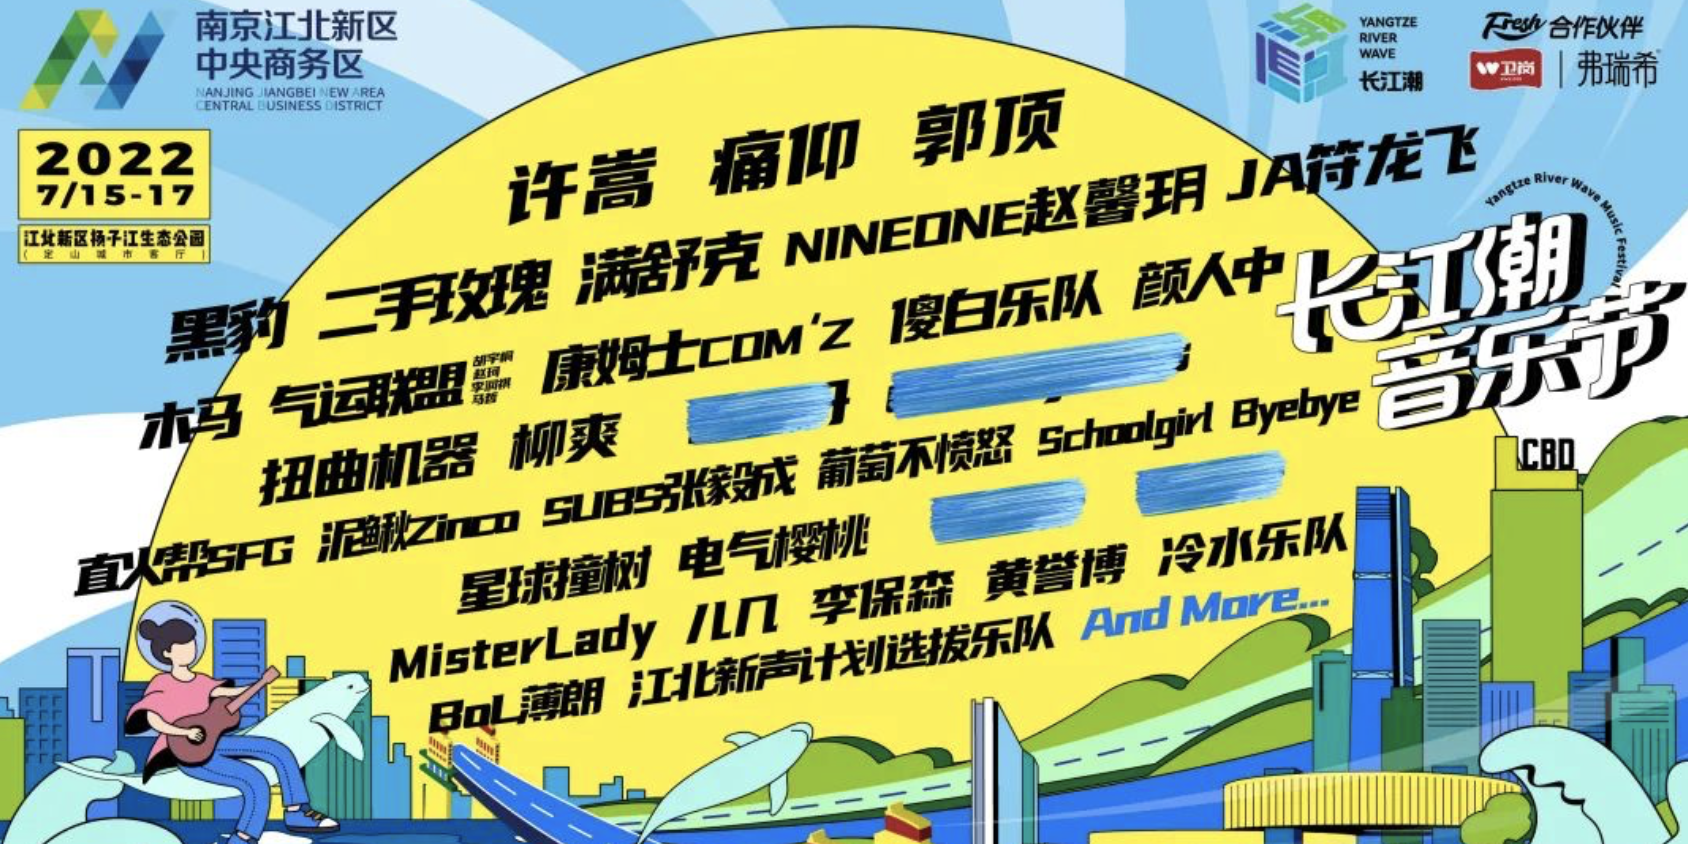 2023南京长江潮音乐节演出安排、购票链接